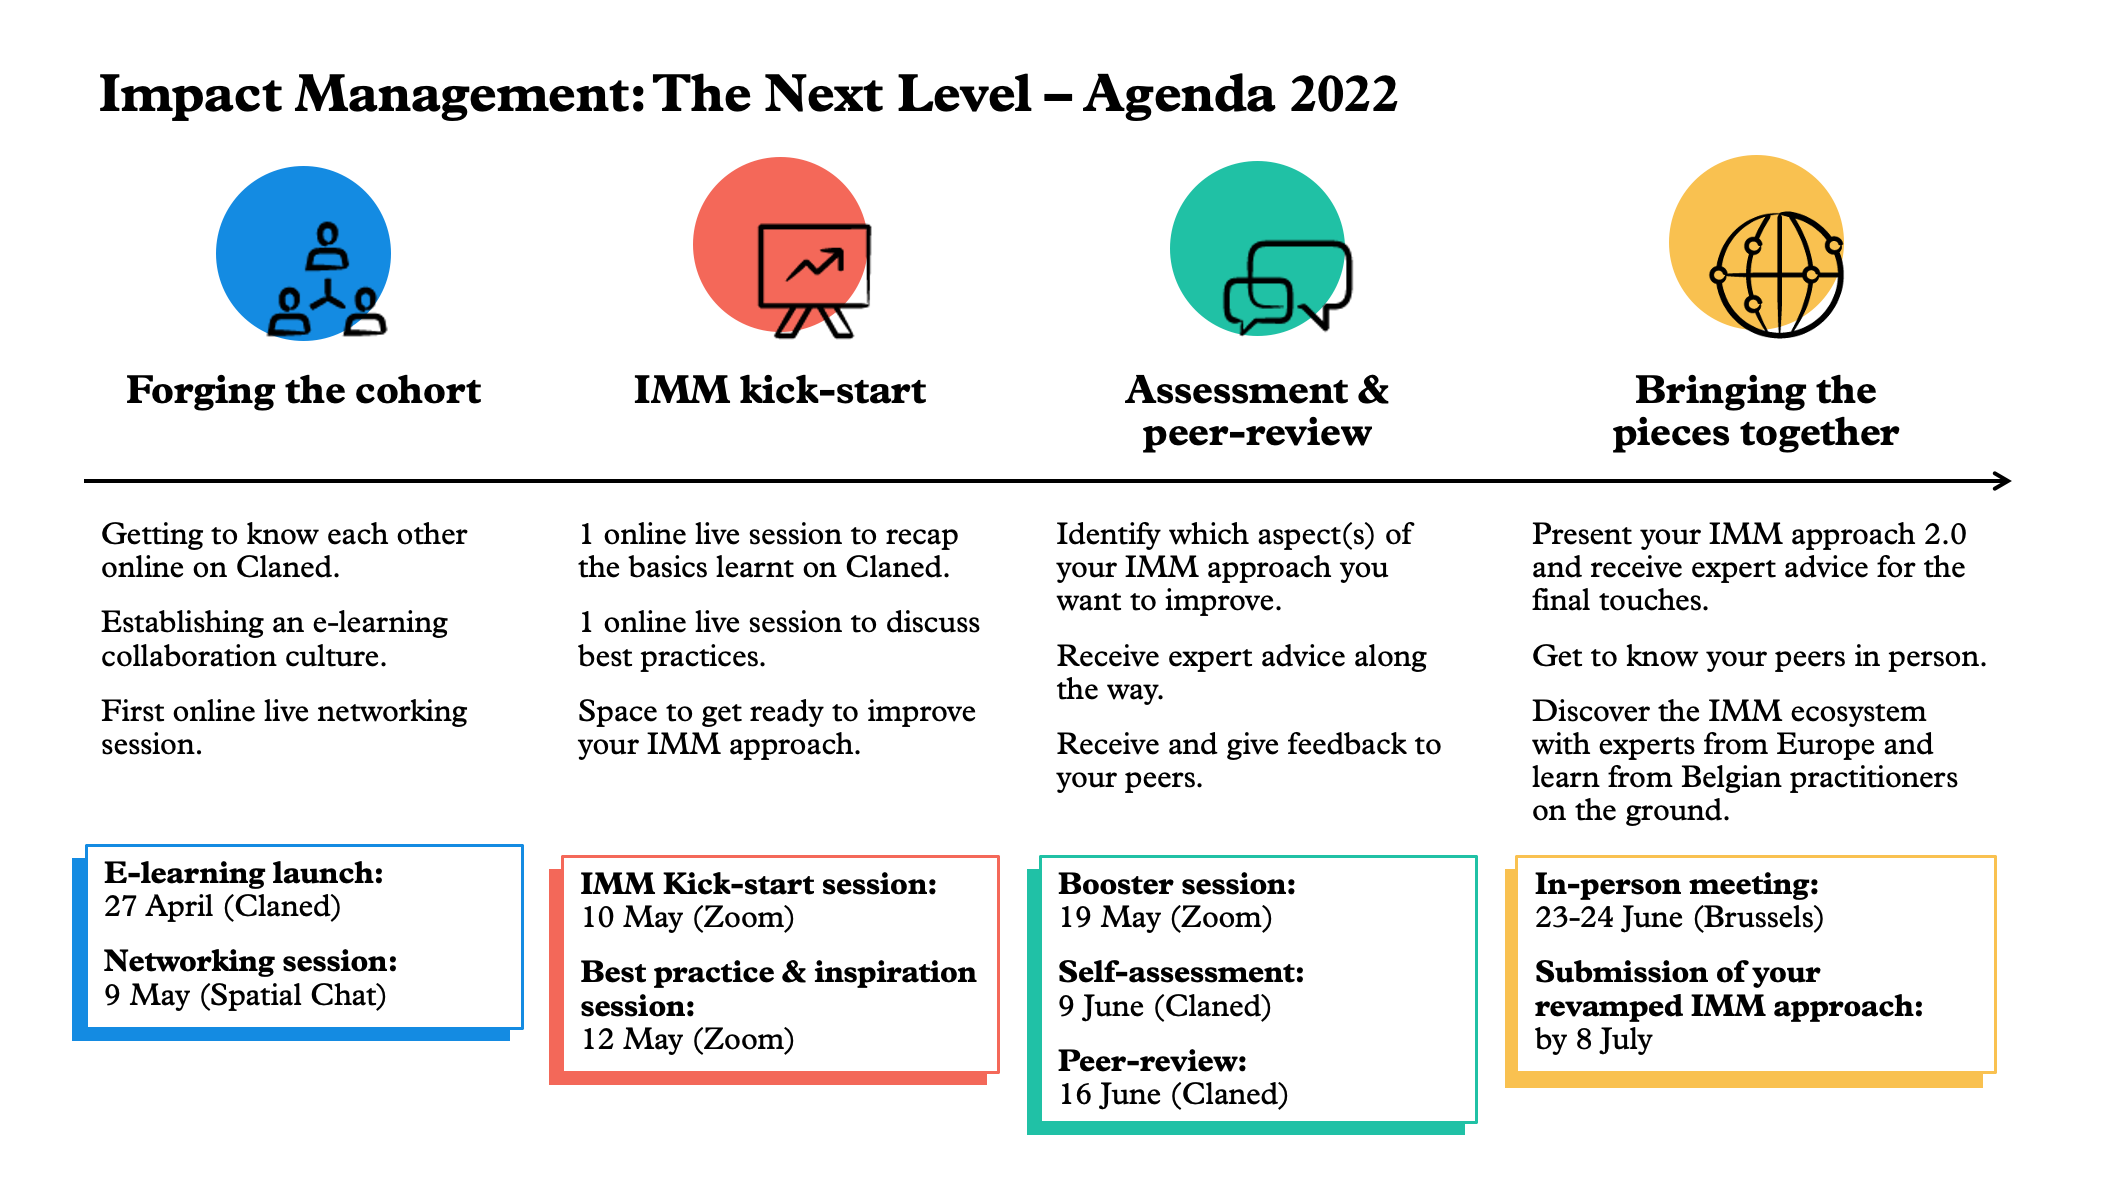 Impact Management course agenda 2022